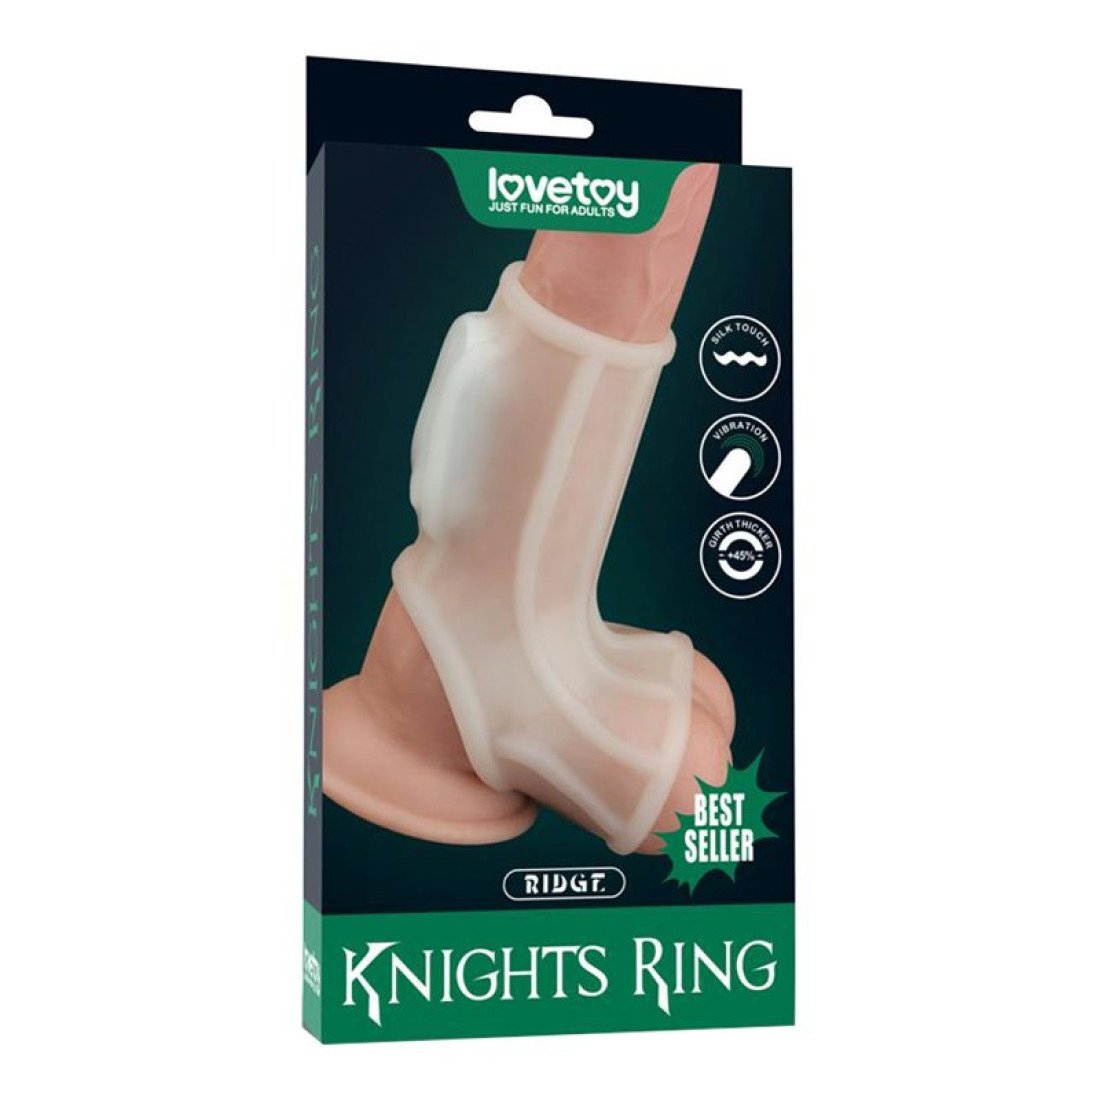 Vibruojanti penio ir sėklidžių mova „Ridges Knights“ - Love Toy